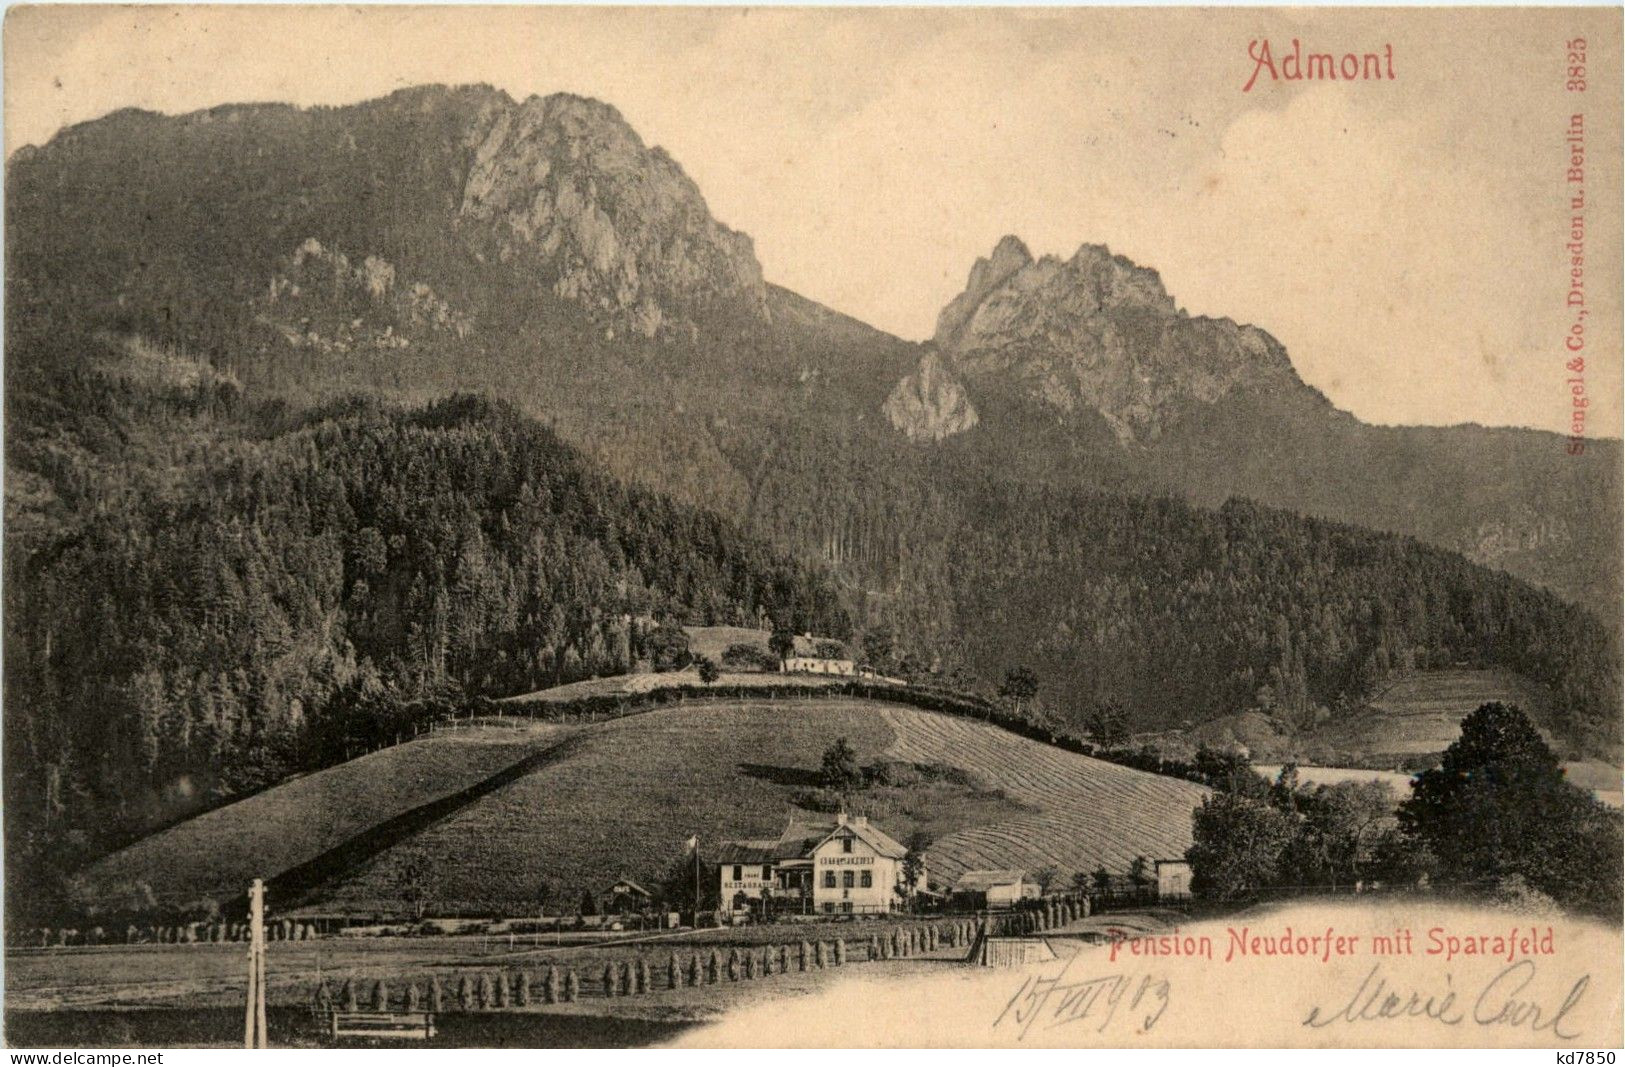 Admont Und Gesäuse/Steiermark - Admont: Pension Neudorfer Mit Sparafeld - Admont